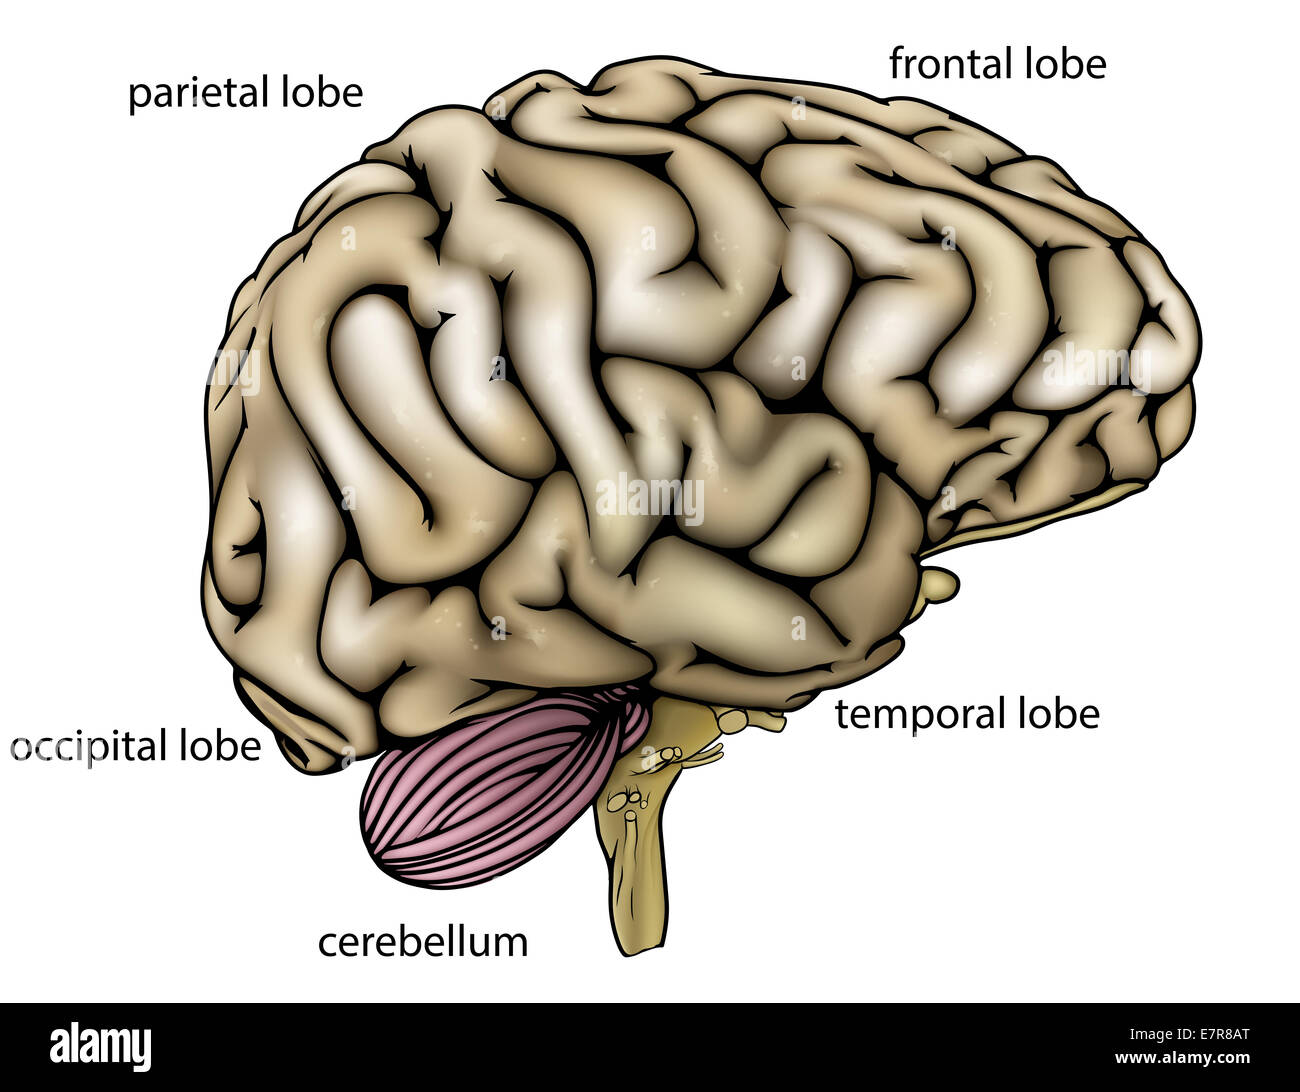 Eine Illustration oder Anatomie Diagramm eine anatomisch korrekte menschliche Gehirn von der Seite mit verschiedenen Abschnitten gekennzeichnet Stockfoto